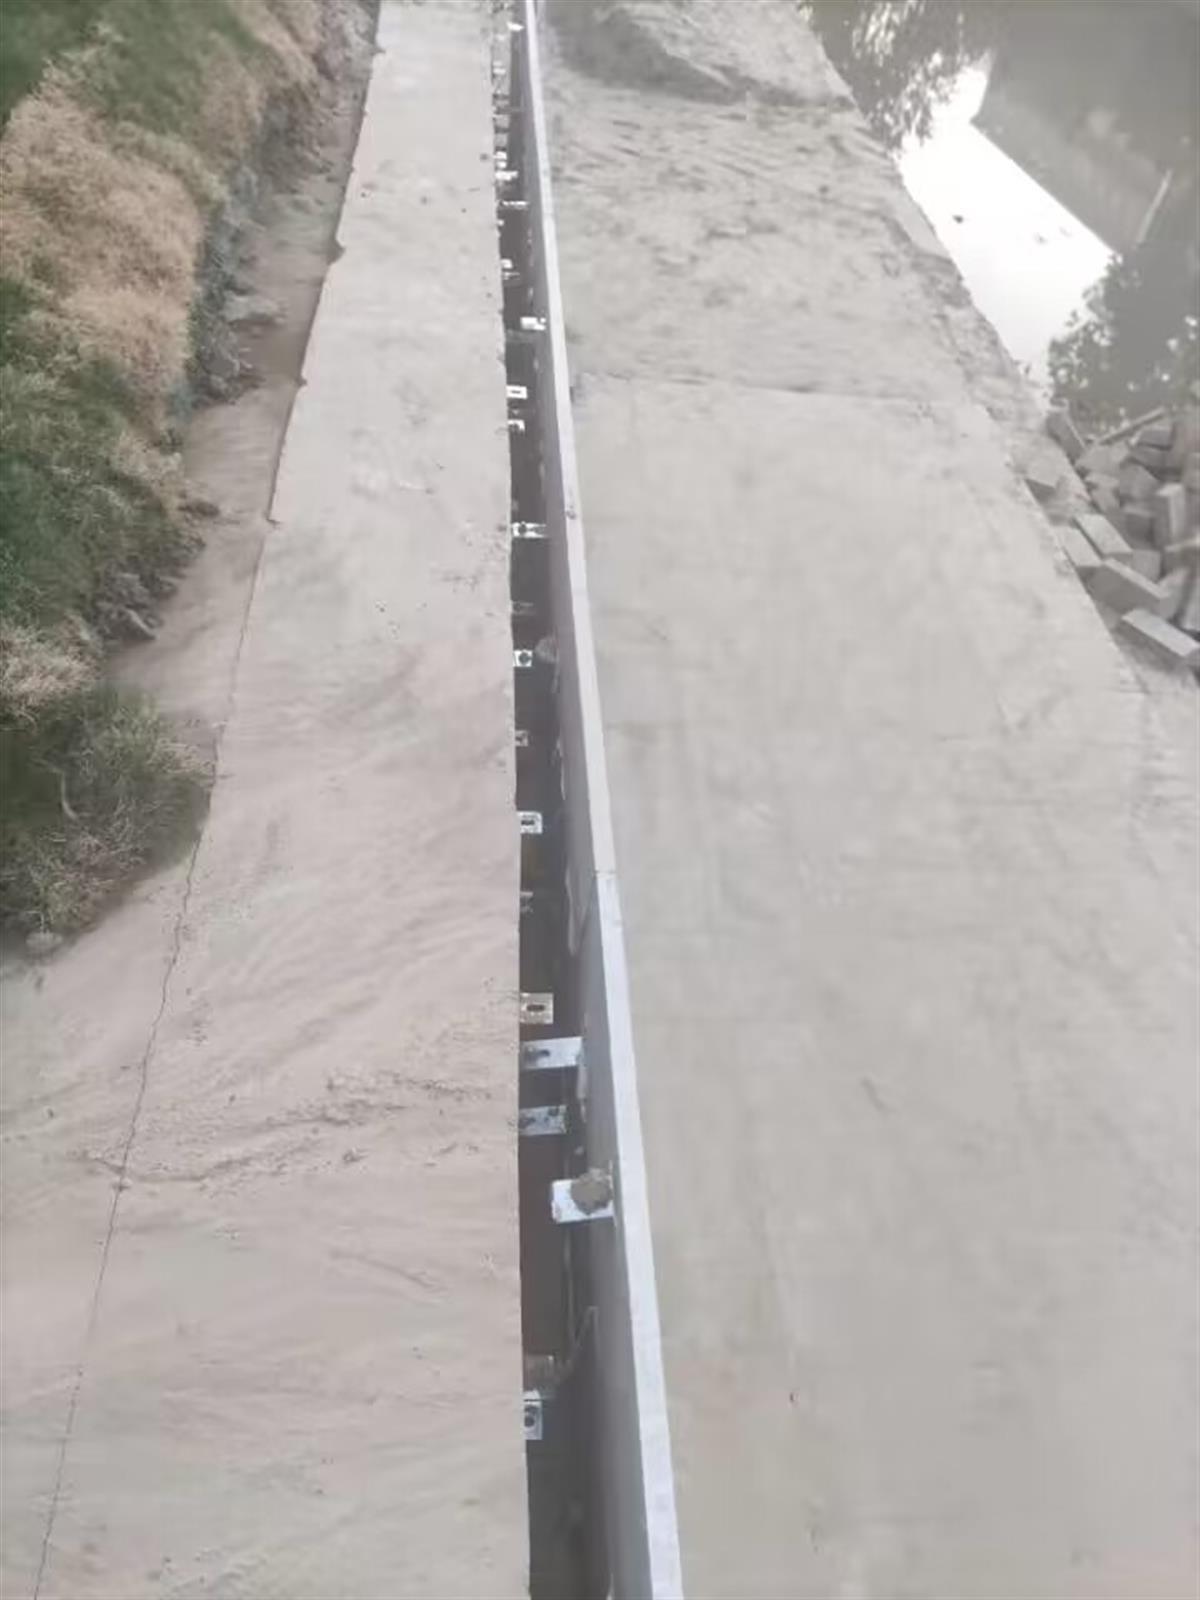 郑州金水河挂贴石材现场:施工人员称每平方米成本不超过500元，当地称石材挂贴总造价650万2